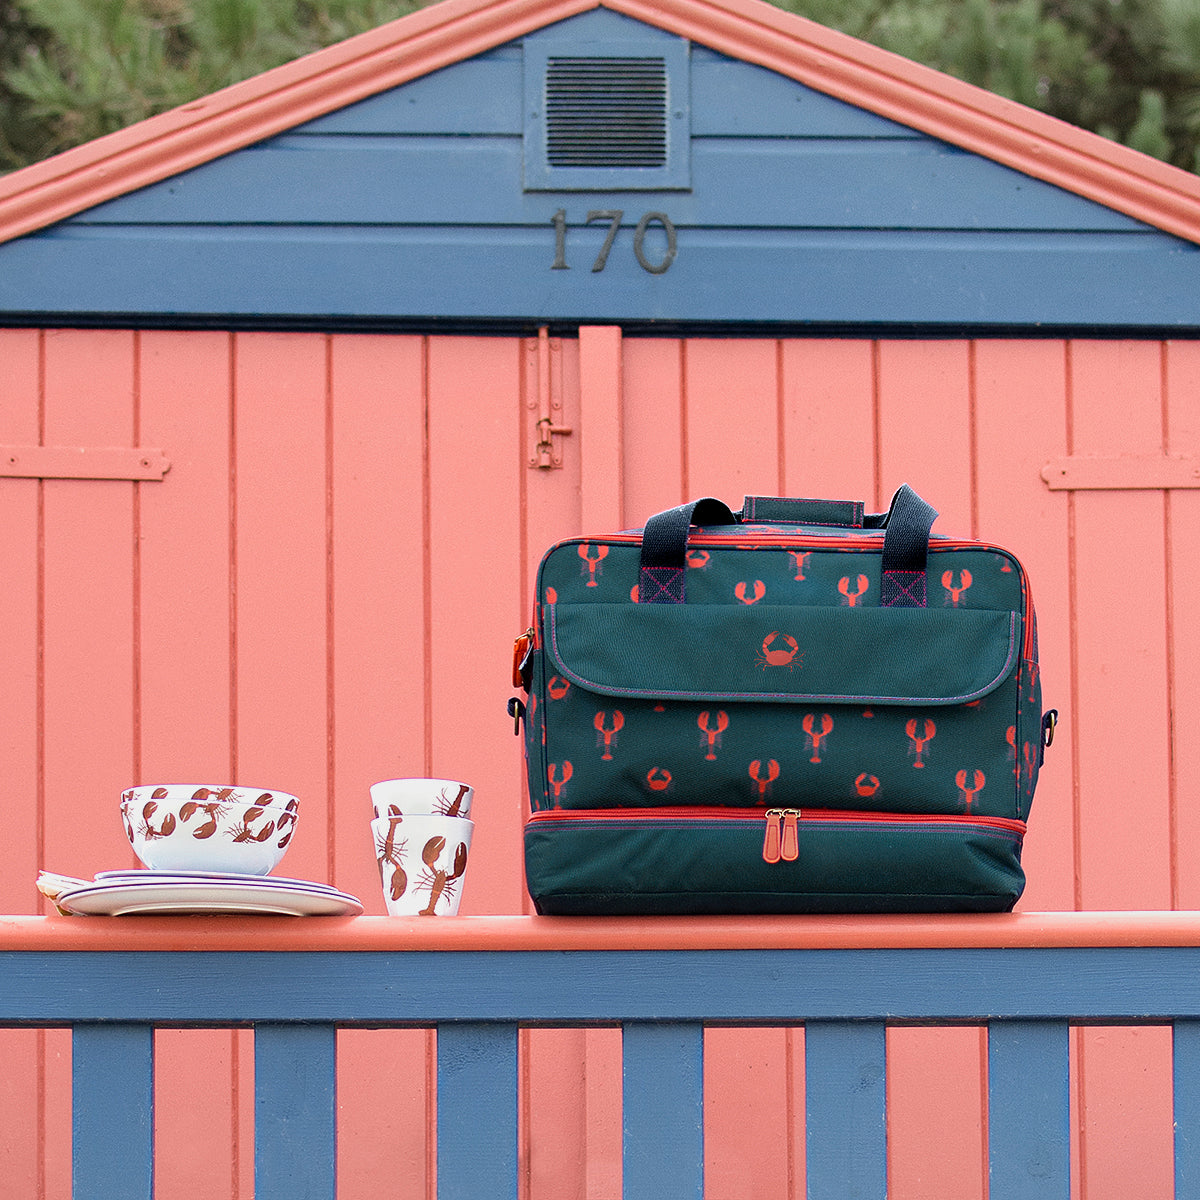 Lobster Summer Picnic Bag by Sophie Allport